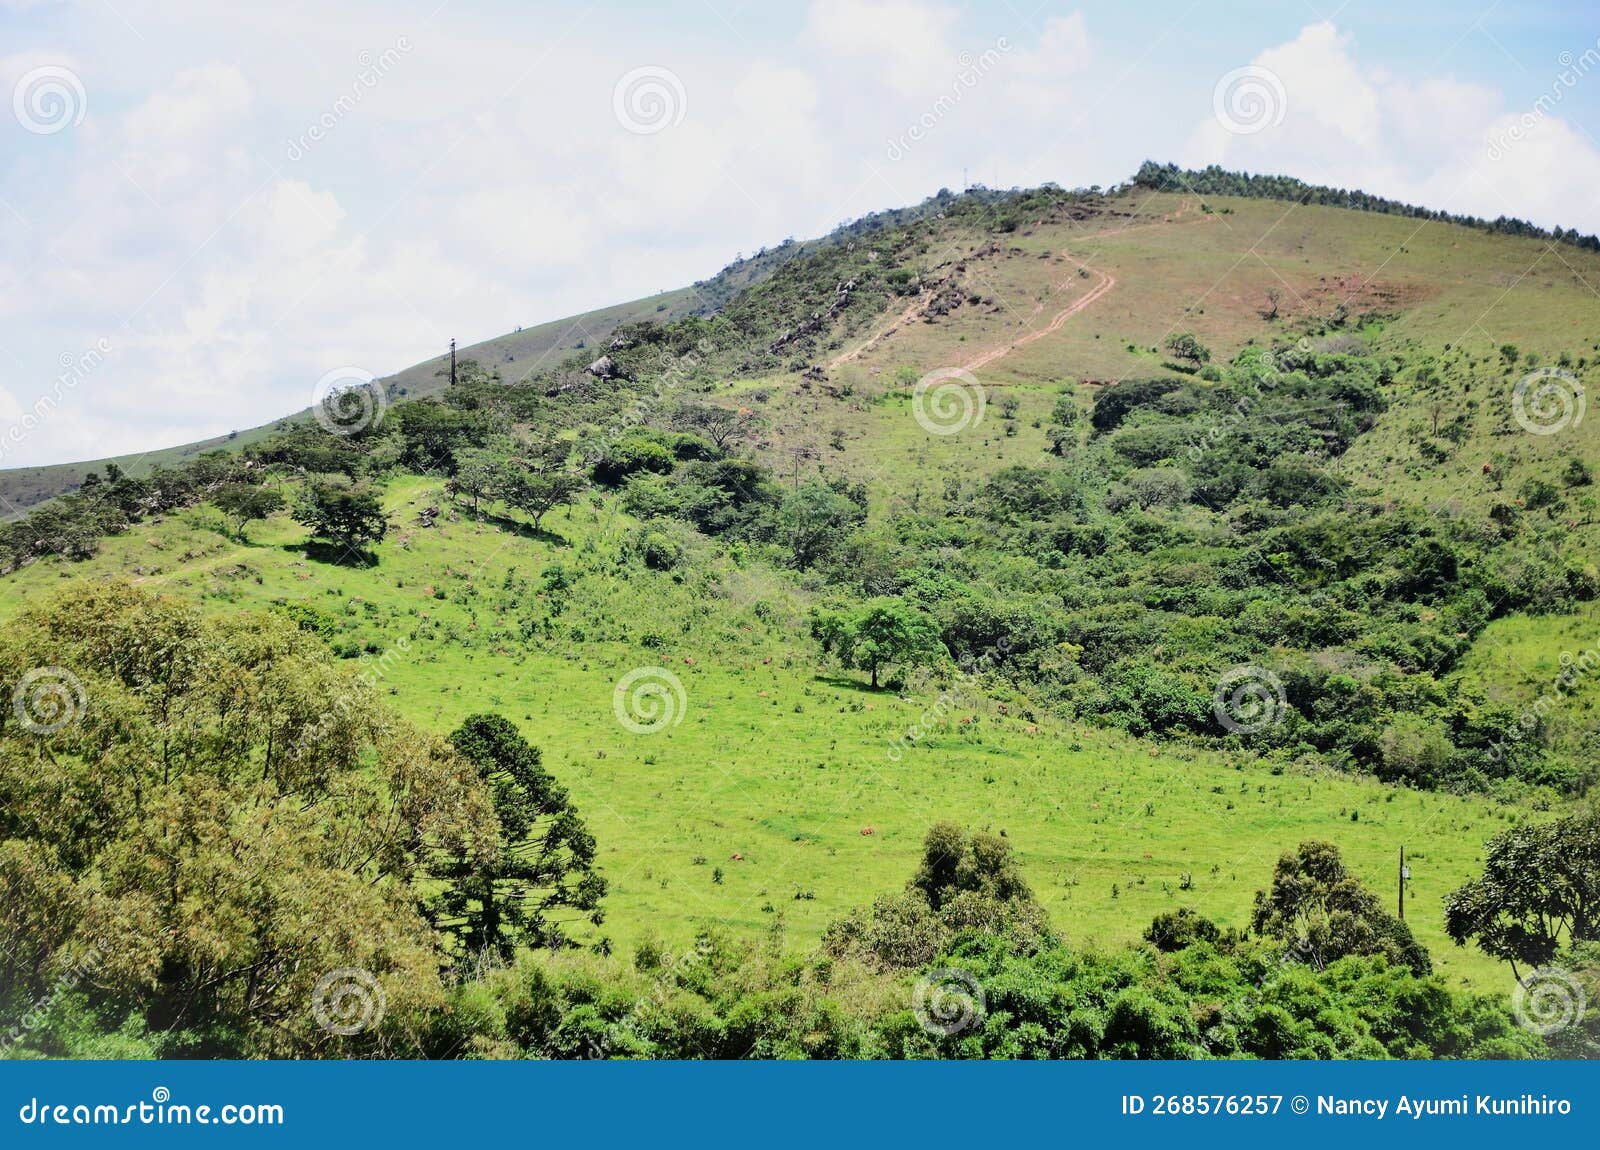 the hill of pedra do Ãndio in andrelÃ¢ndia